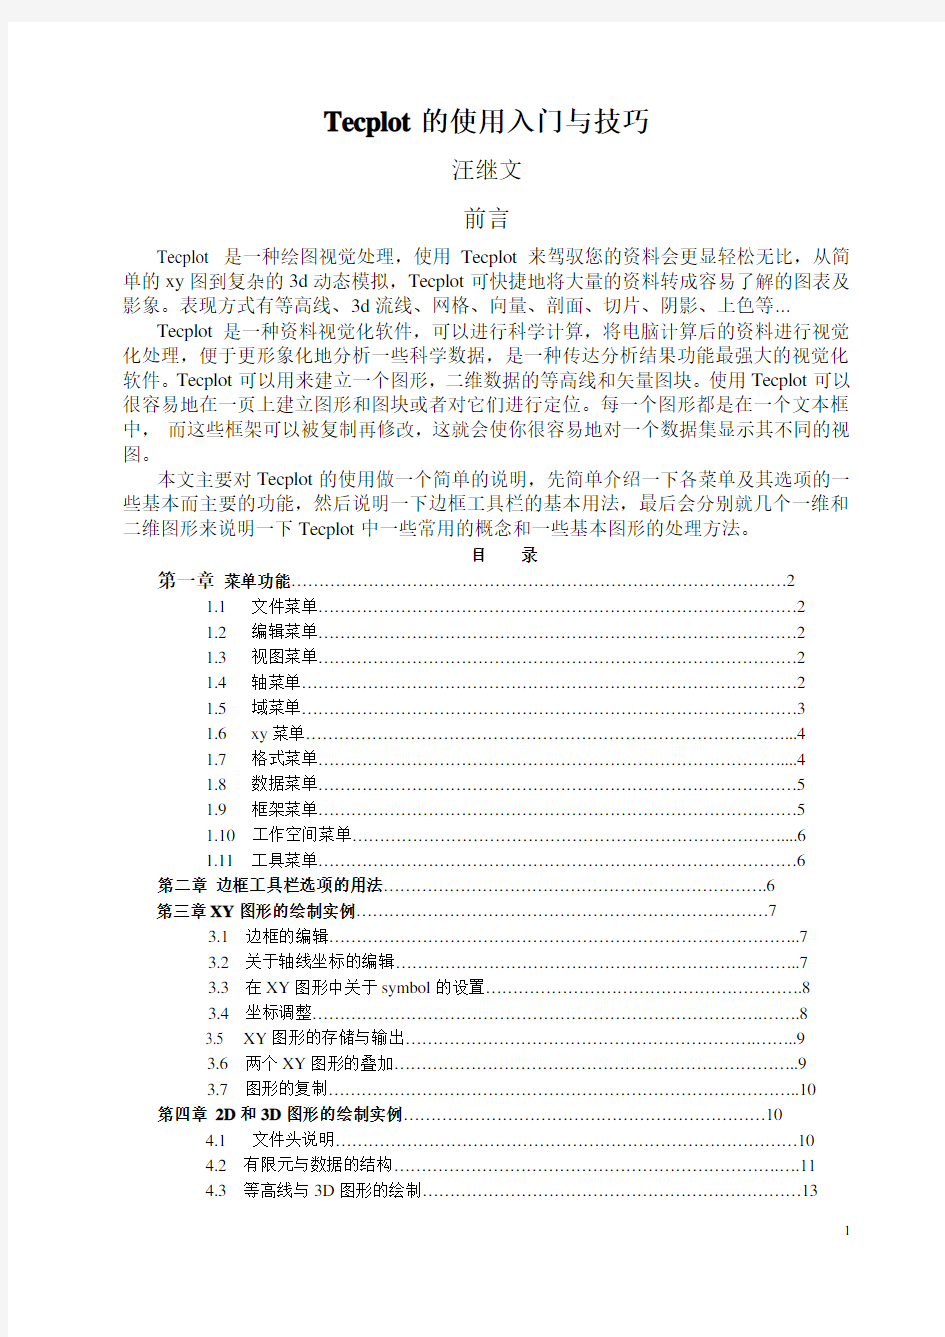 一个简单的tecplot中文入门教程